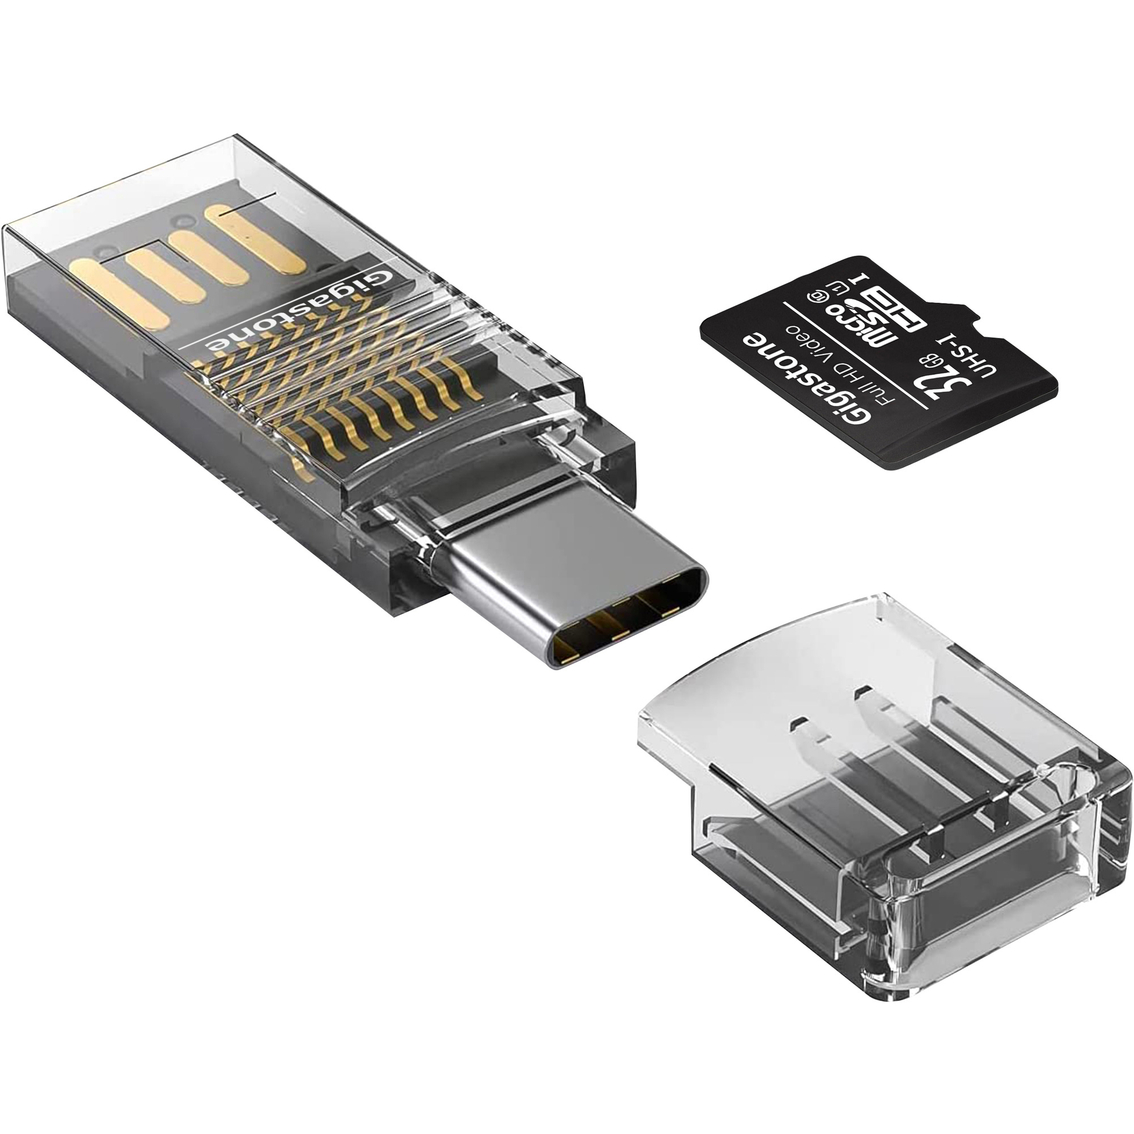 Gigastone 32GB Prime Series microSD Card 4-in-1 Kit - Image 2 of 6